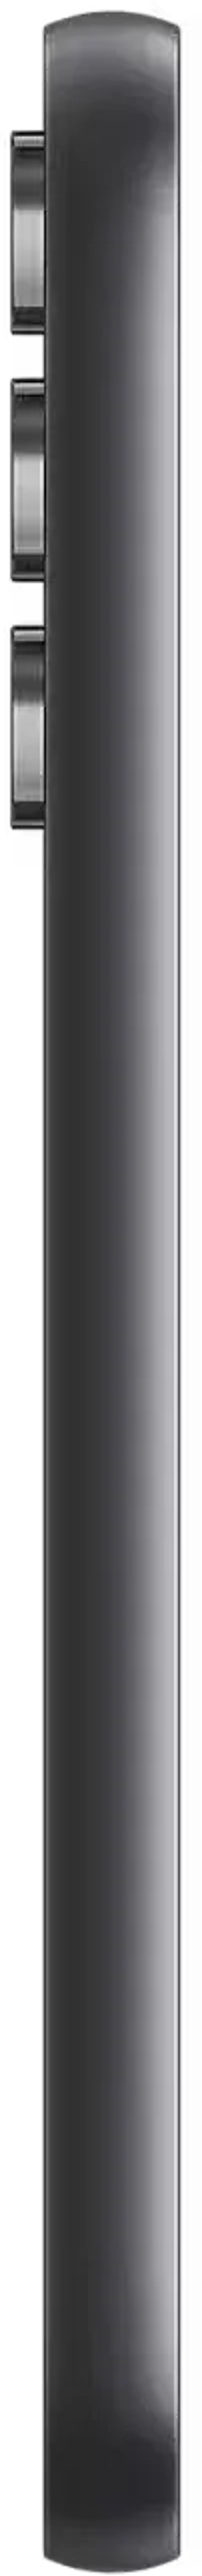 Смартфон Samsung Galaxy A54 8/256Gb 5G Графит